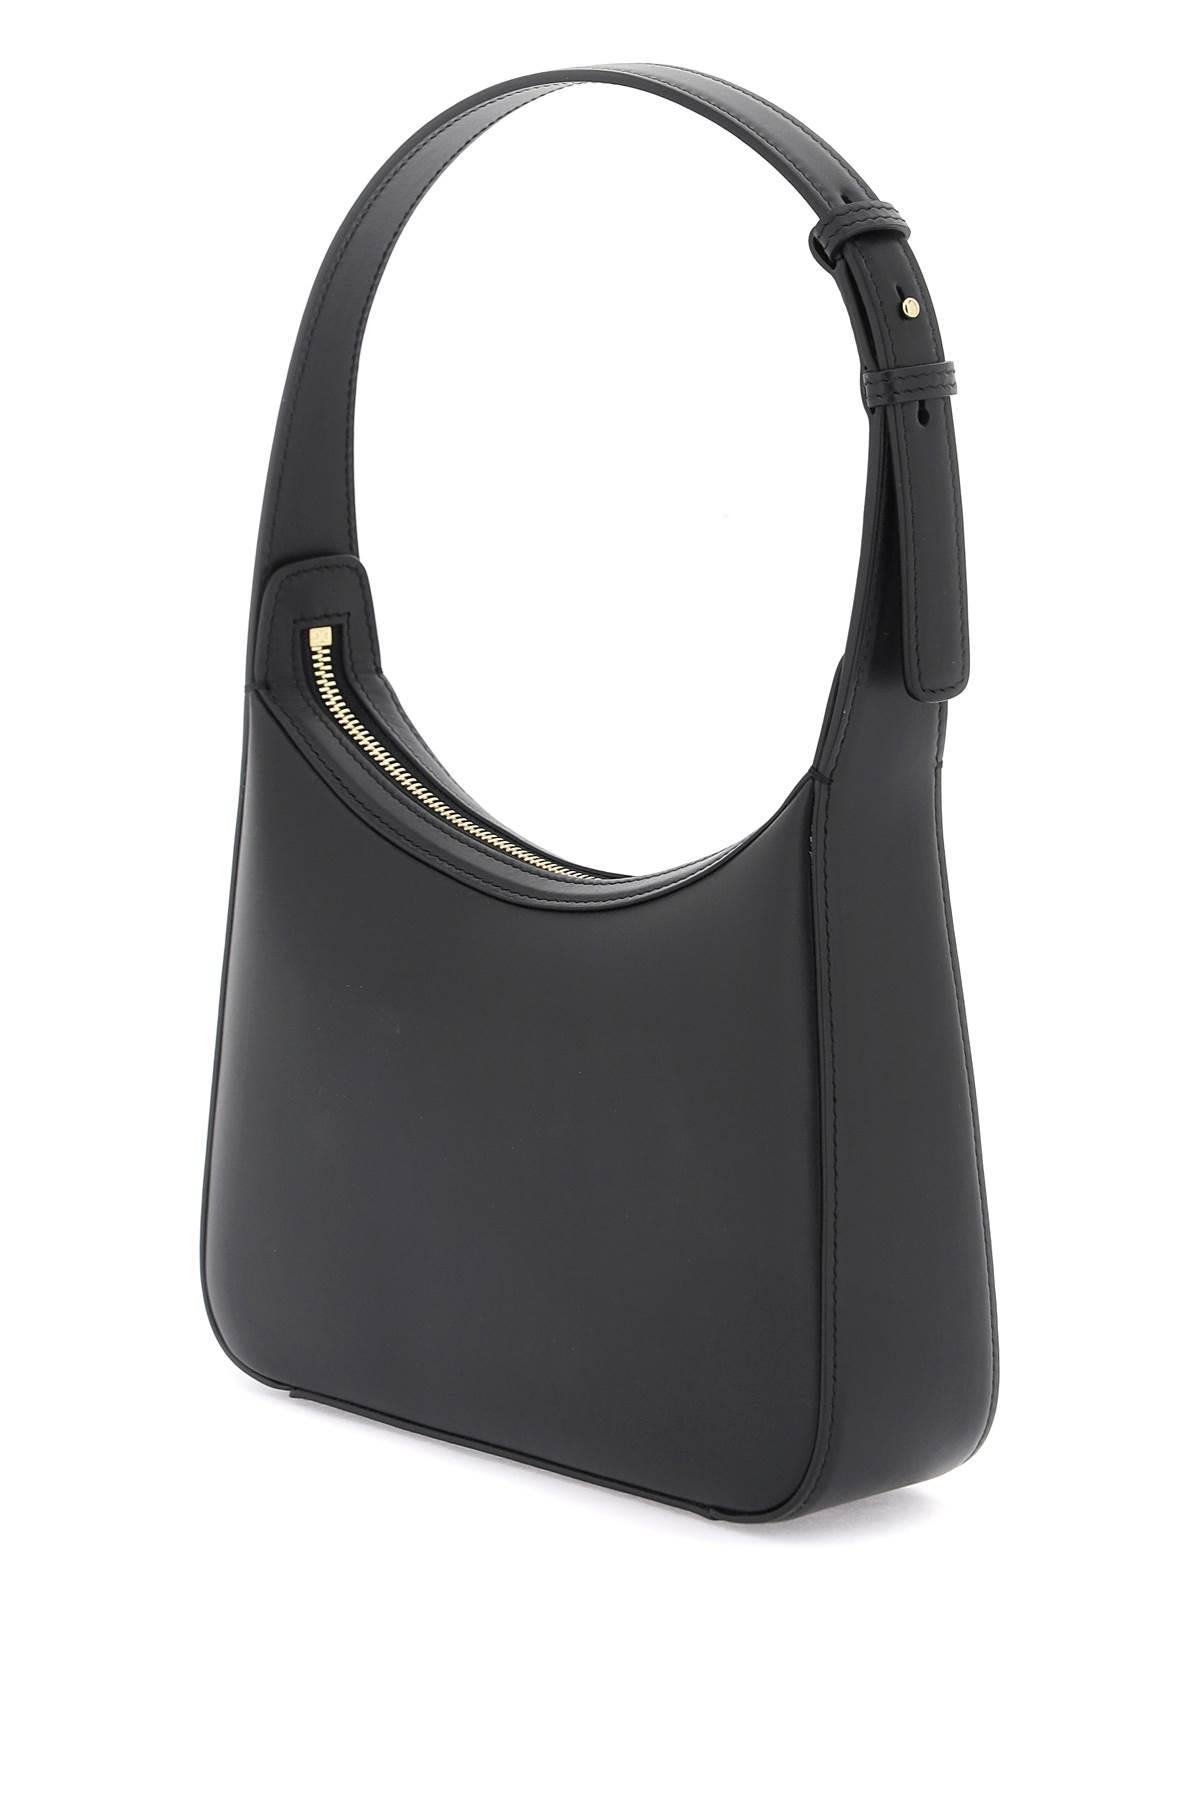 Dolce & Gabbana 3.5 Shoulder Bag - 2